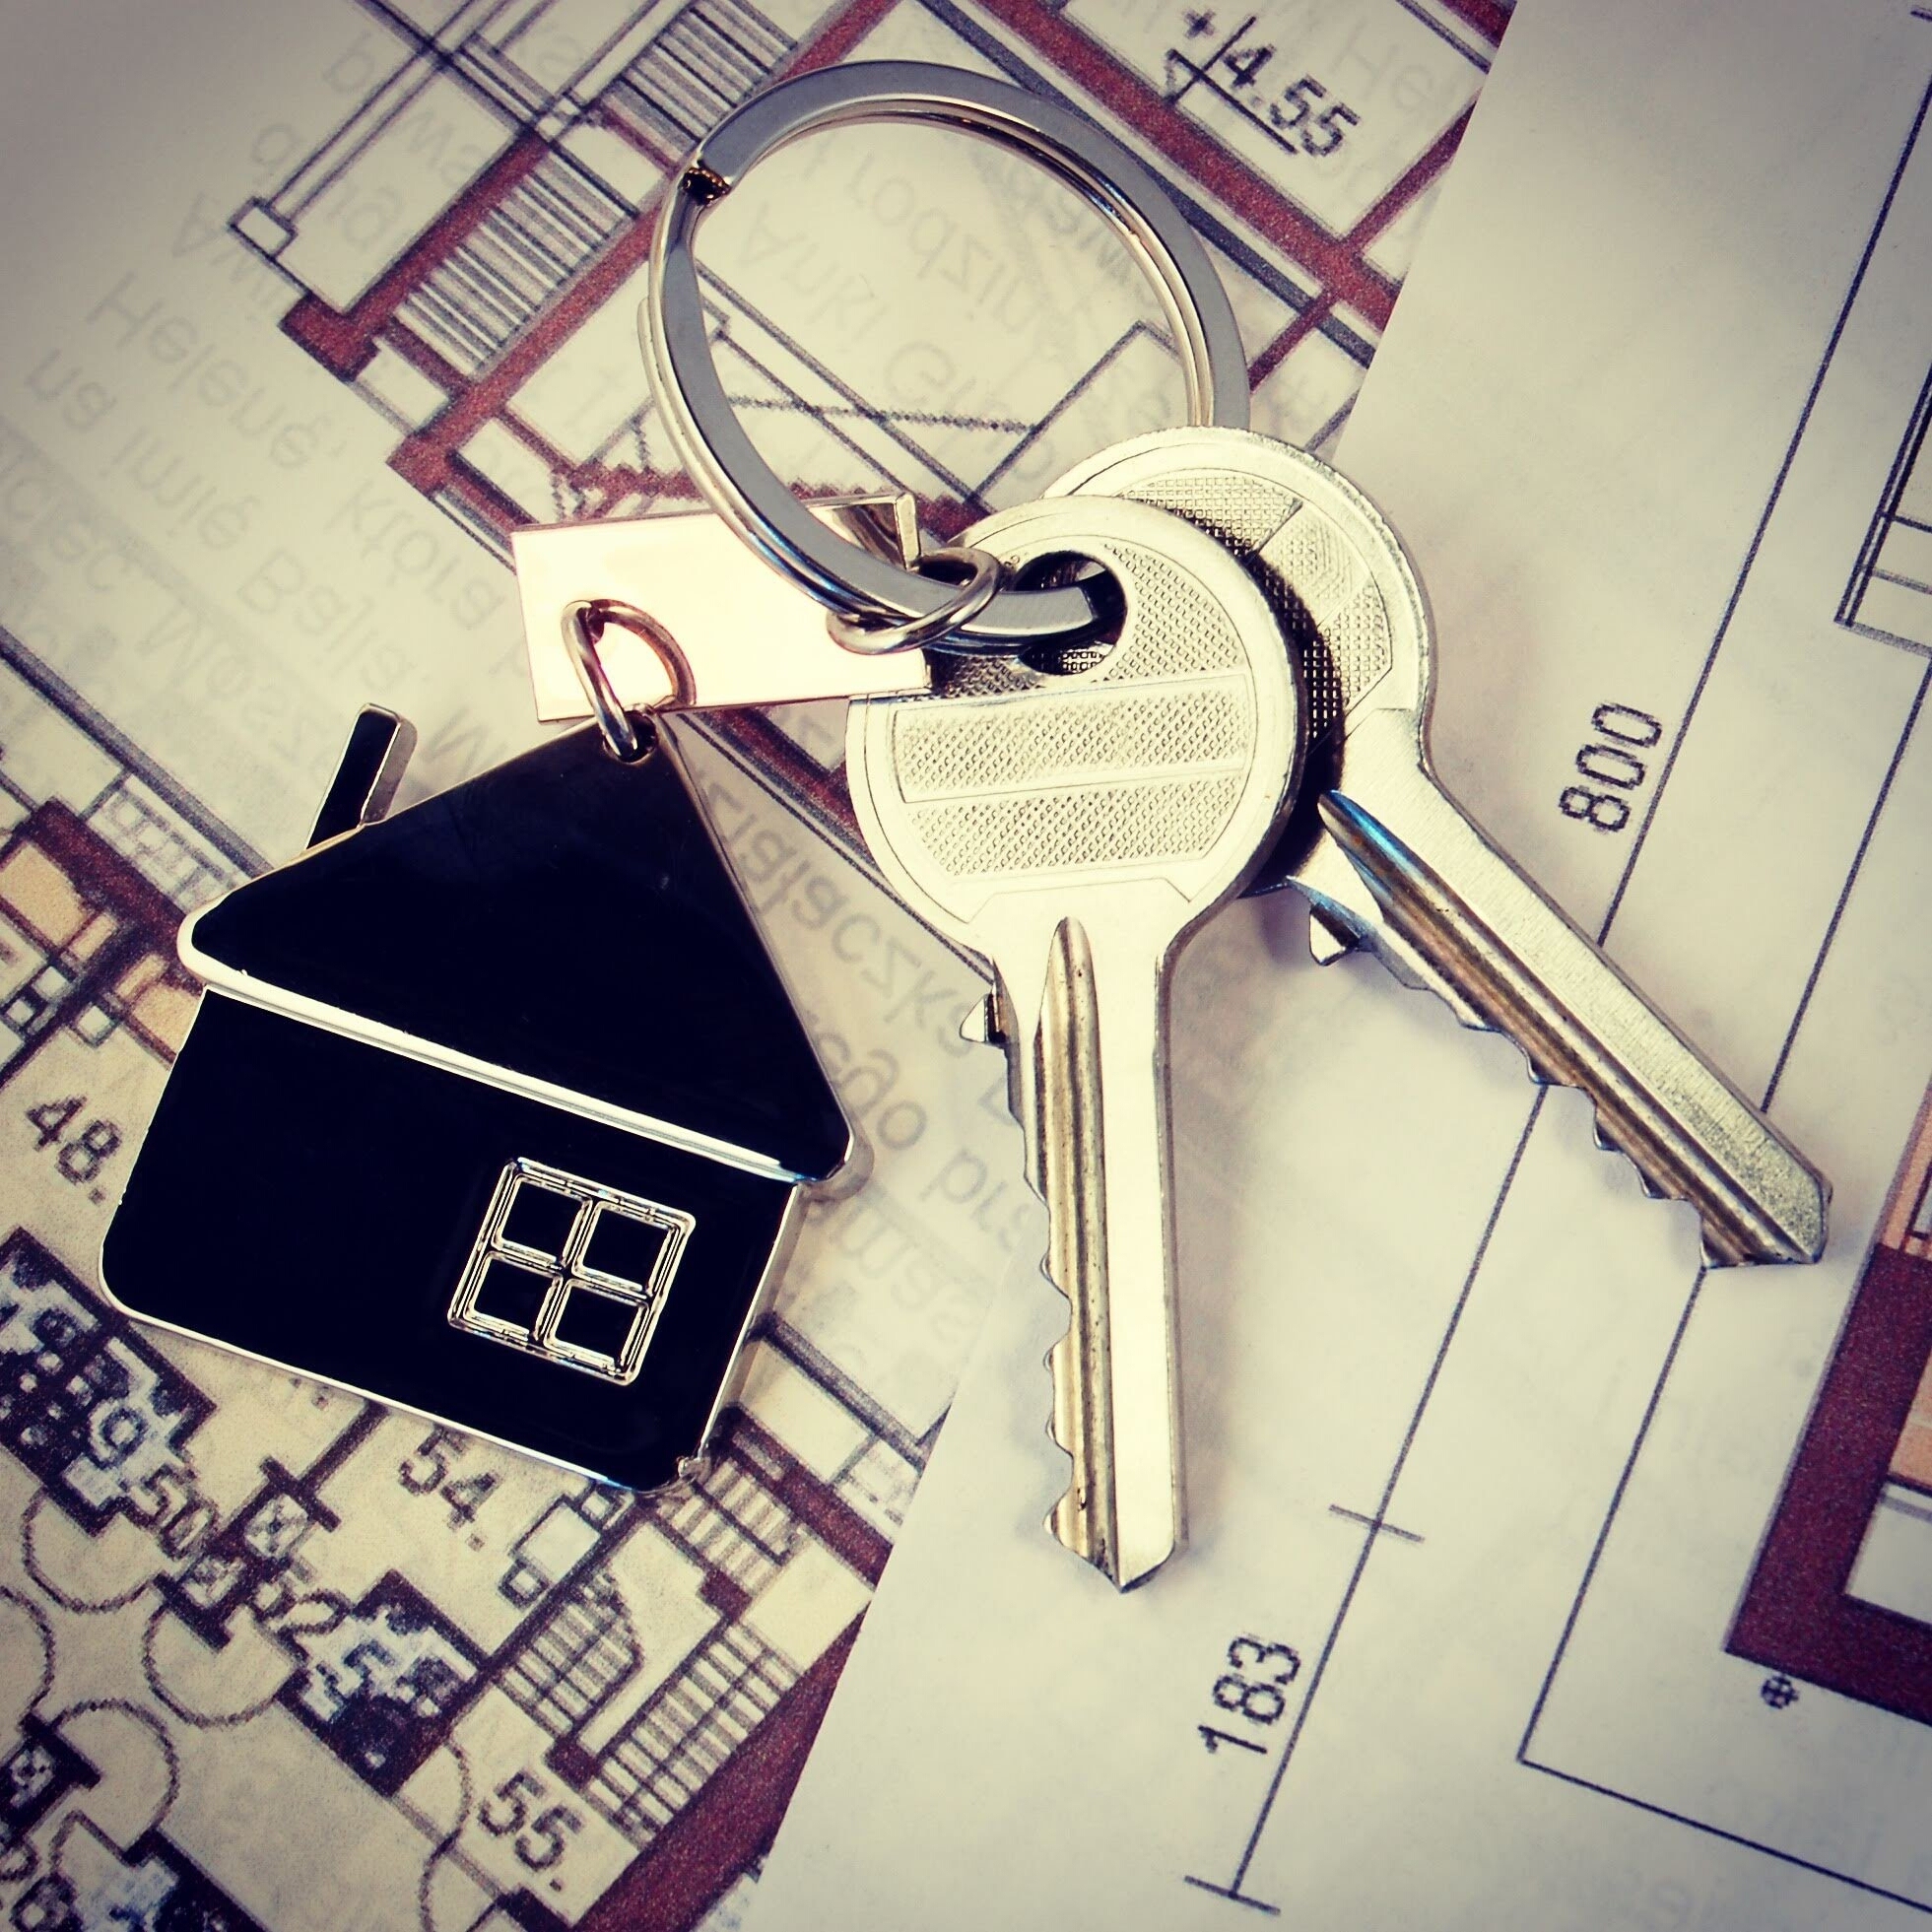 Сроки для отмены сделки по продаже недвижимости — нюансы и законодательство